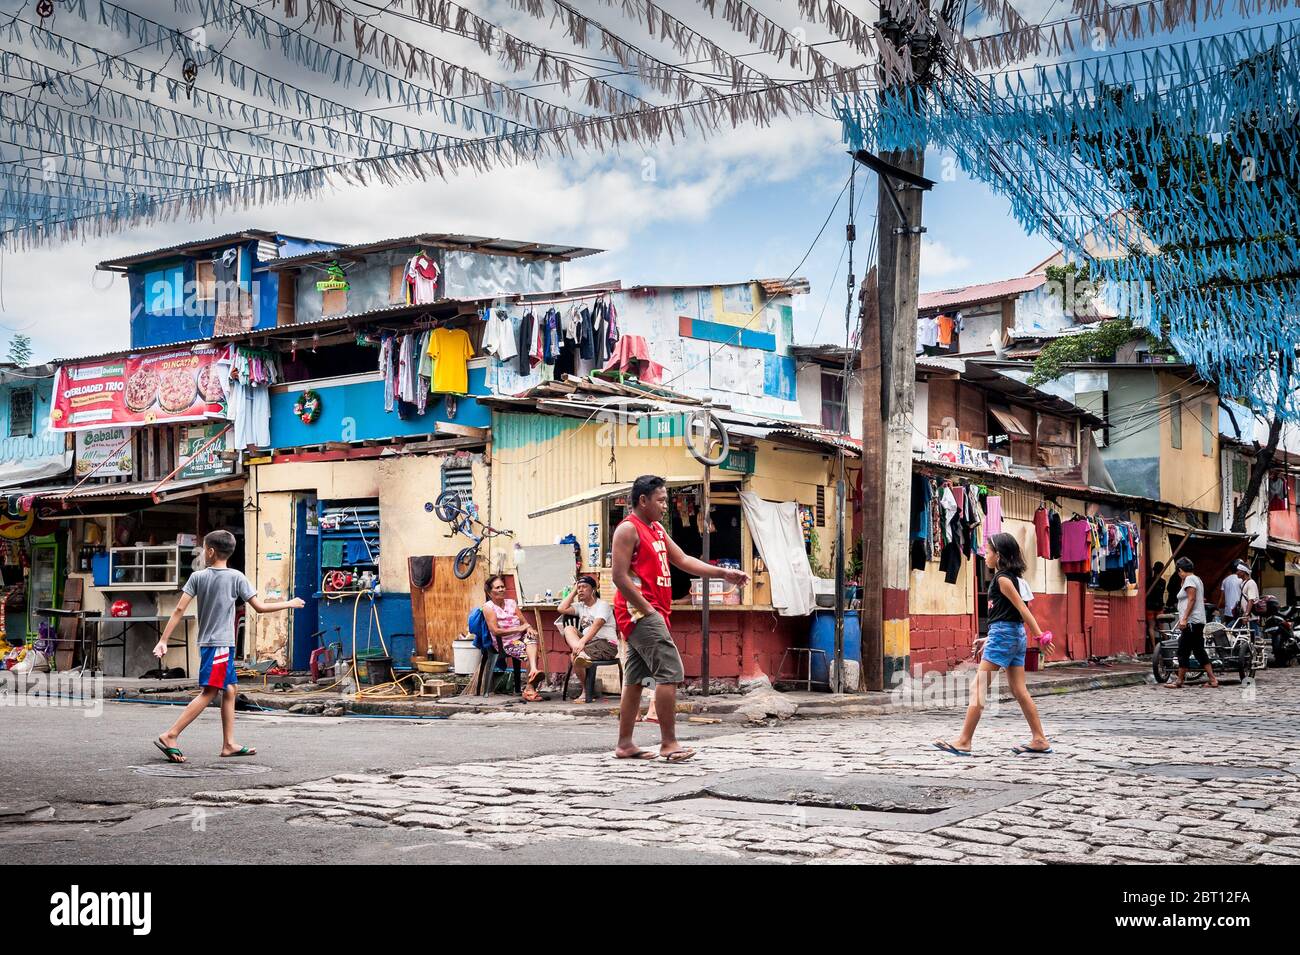 Scatti di un incrocio stradale colorato e trafficato nella vecchia città murata di Intramurous, Manila, le Filippine. Foto Stock